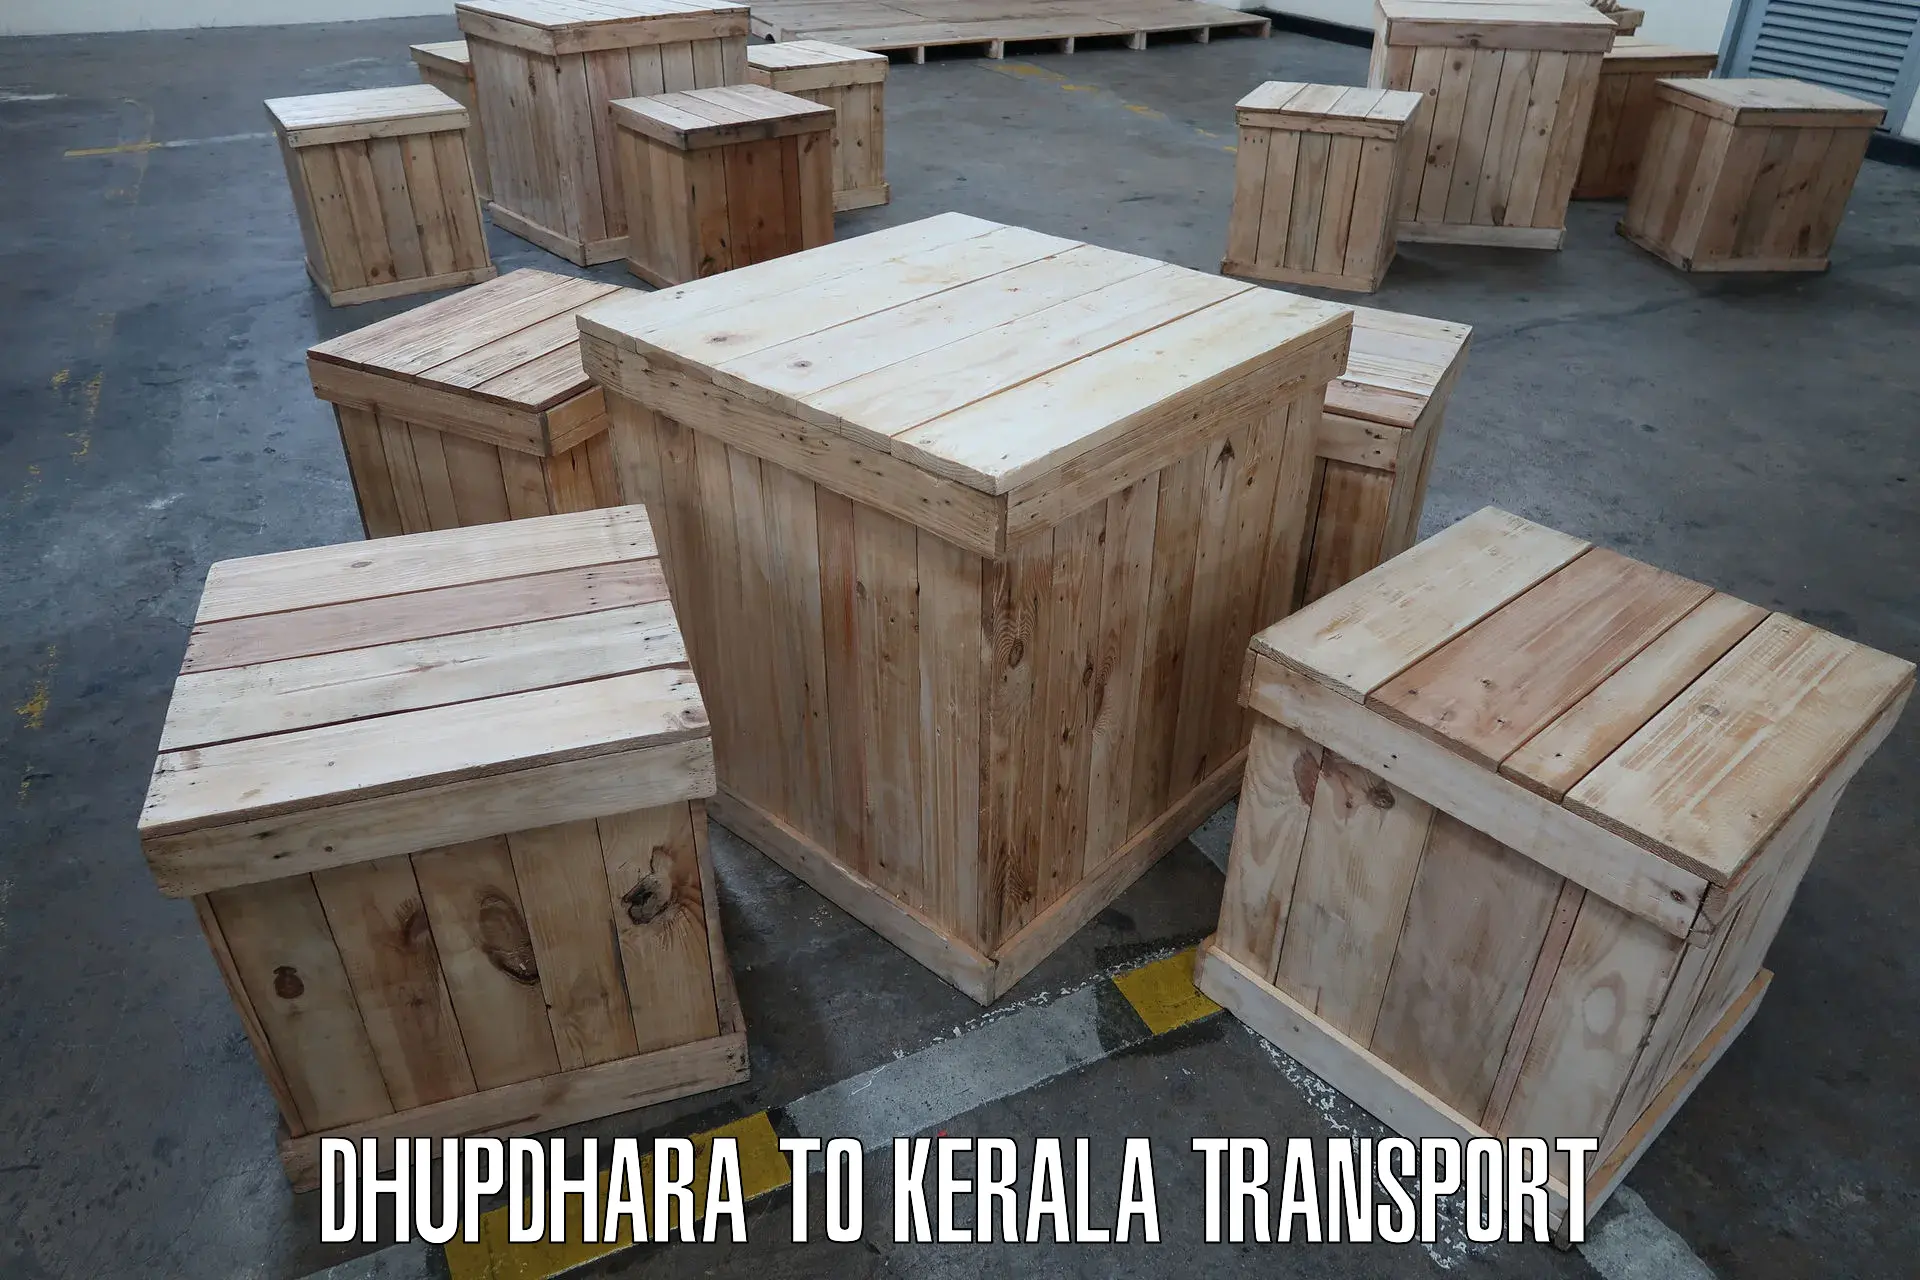 Shipping partner Dhupdhara to Karunagappally